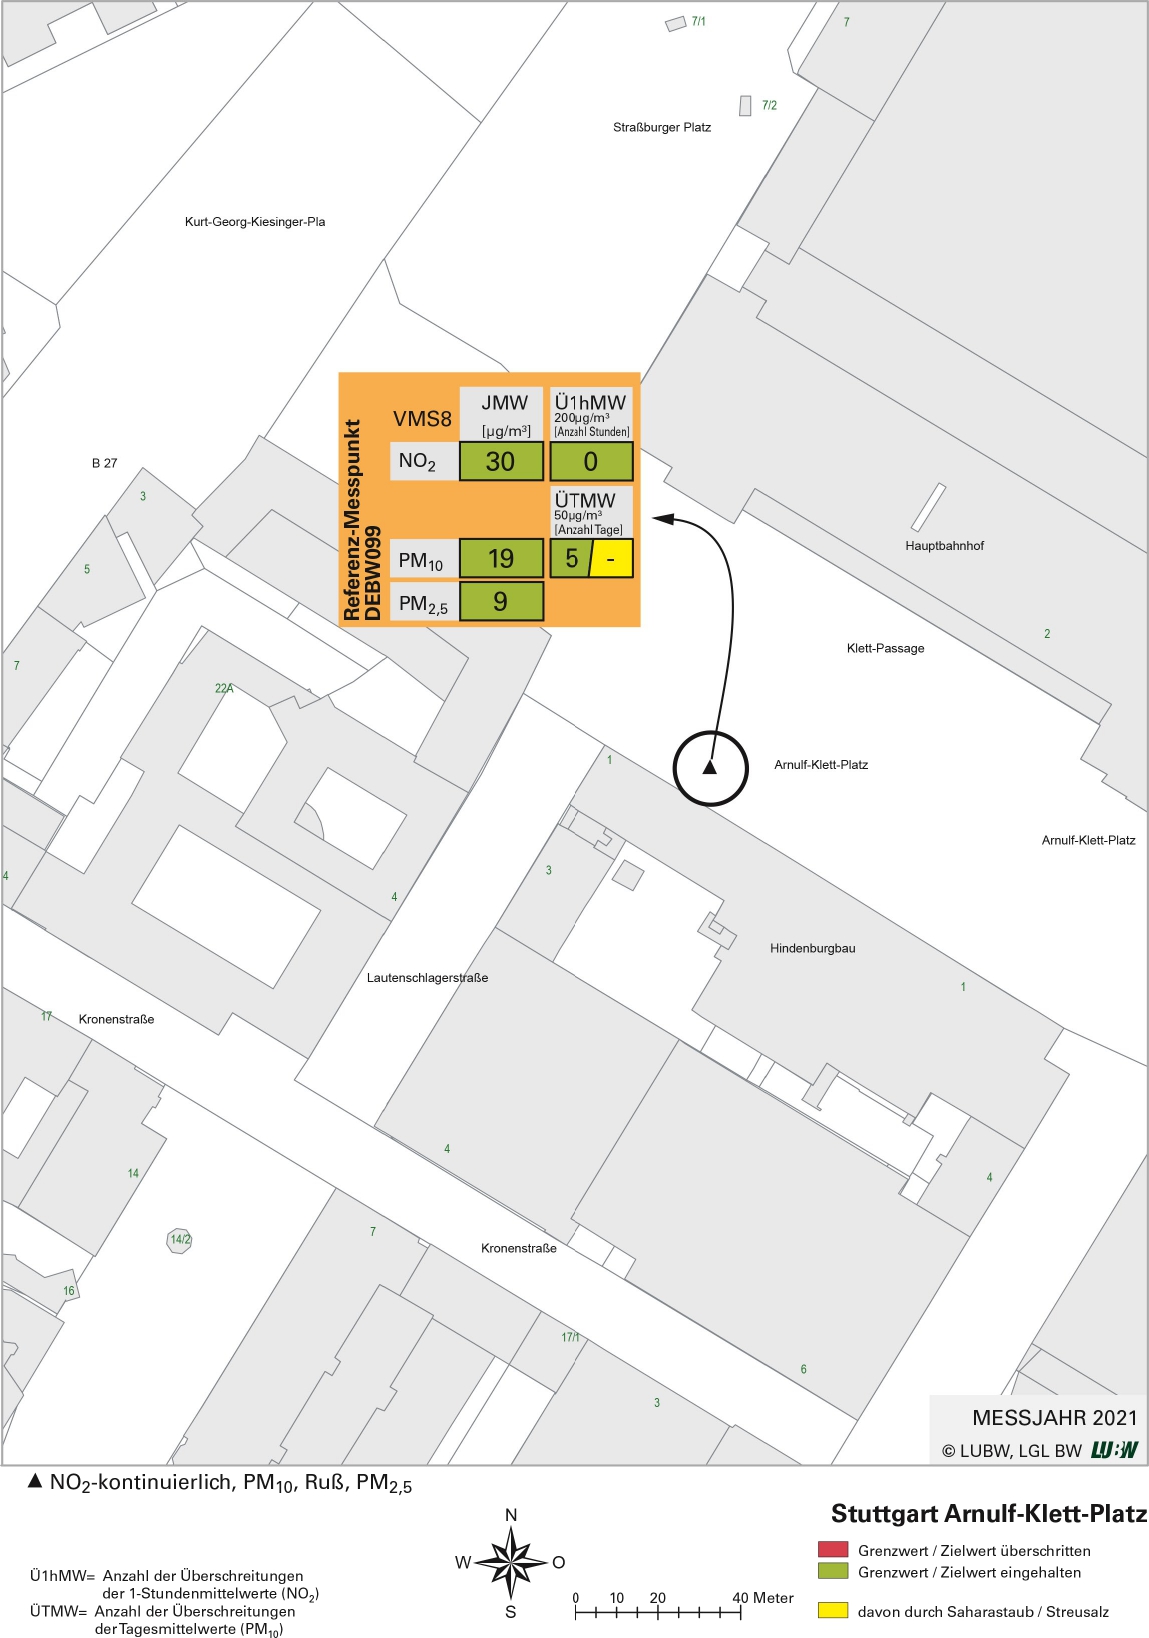 Kartenausschnitt, der die Lage der Messstelle Stuttgart Arnulf-Klett-Platz (Referenzmesspunkt) zeigt. Dargestellt sind zudem die Ergebnisse (Jahresmittelwerte 2021, Überschreitungen 2021) der gemessenen Belastung durch Stickstoffdioxid, Partikel PM10 und Partikel PM2,5.